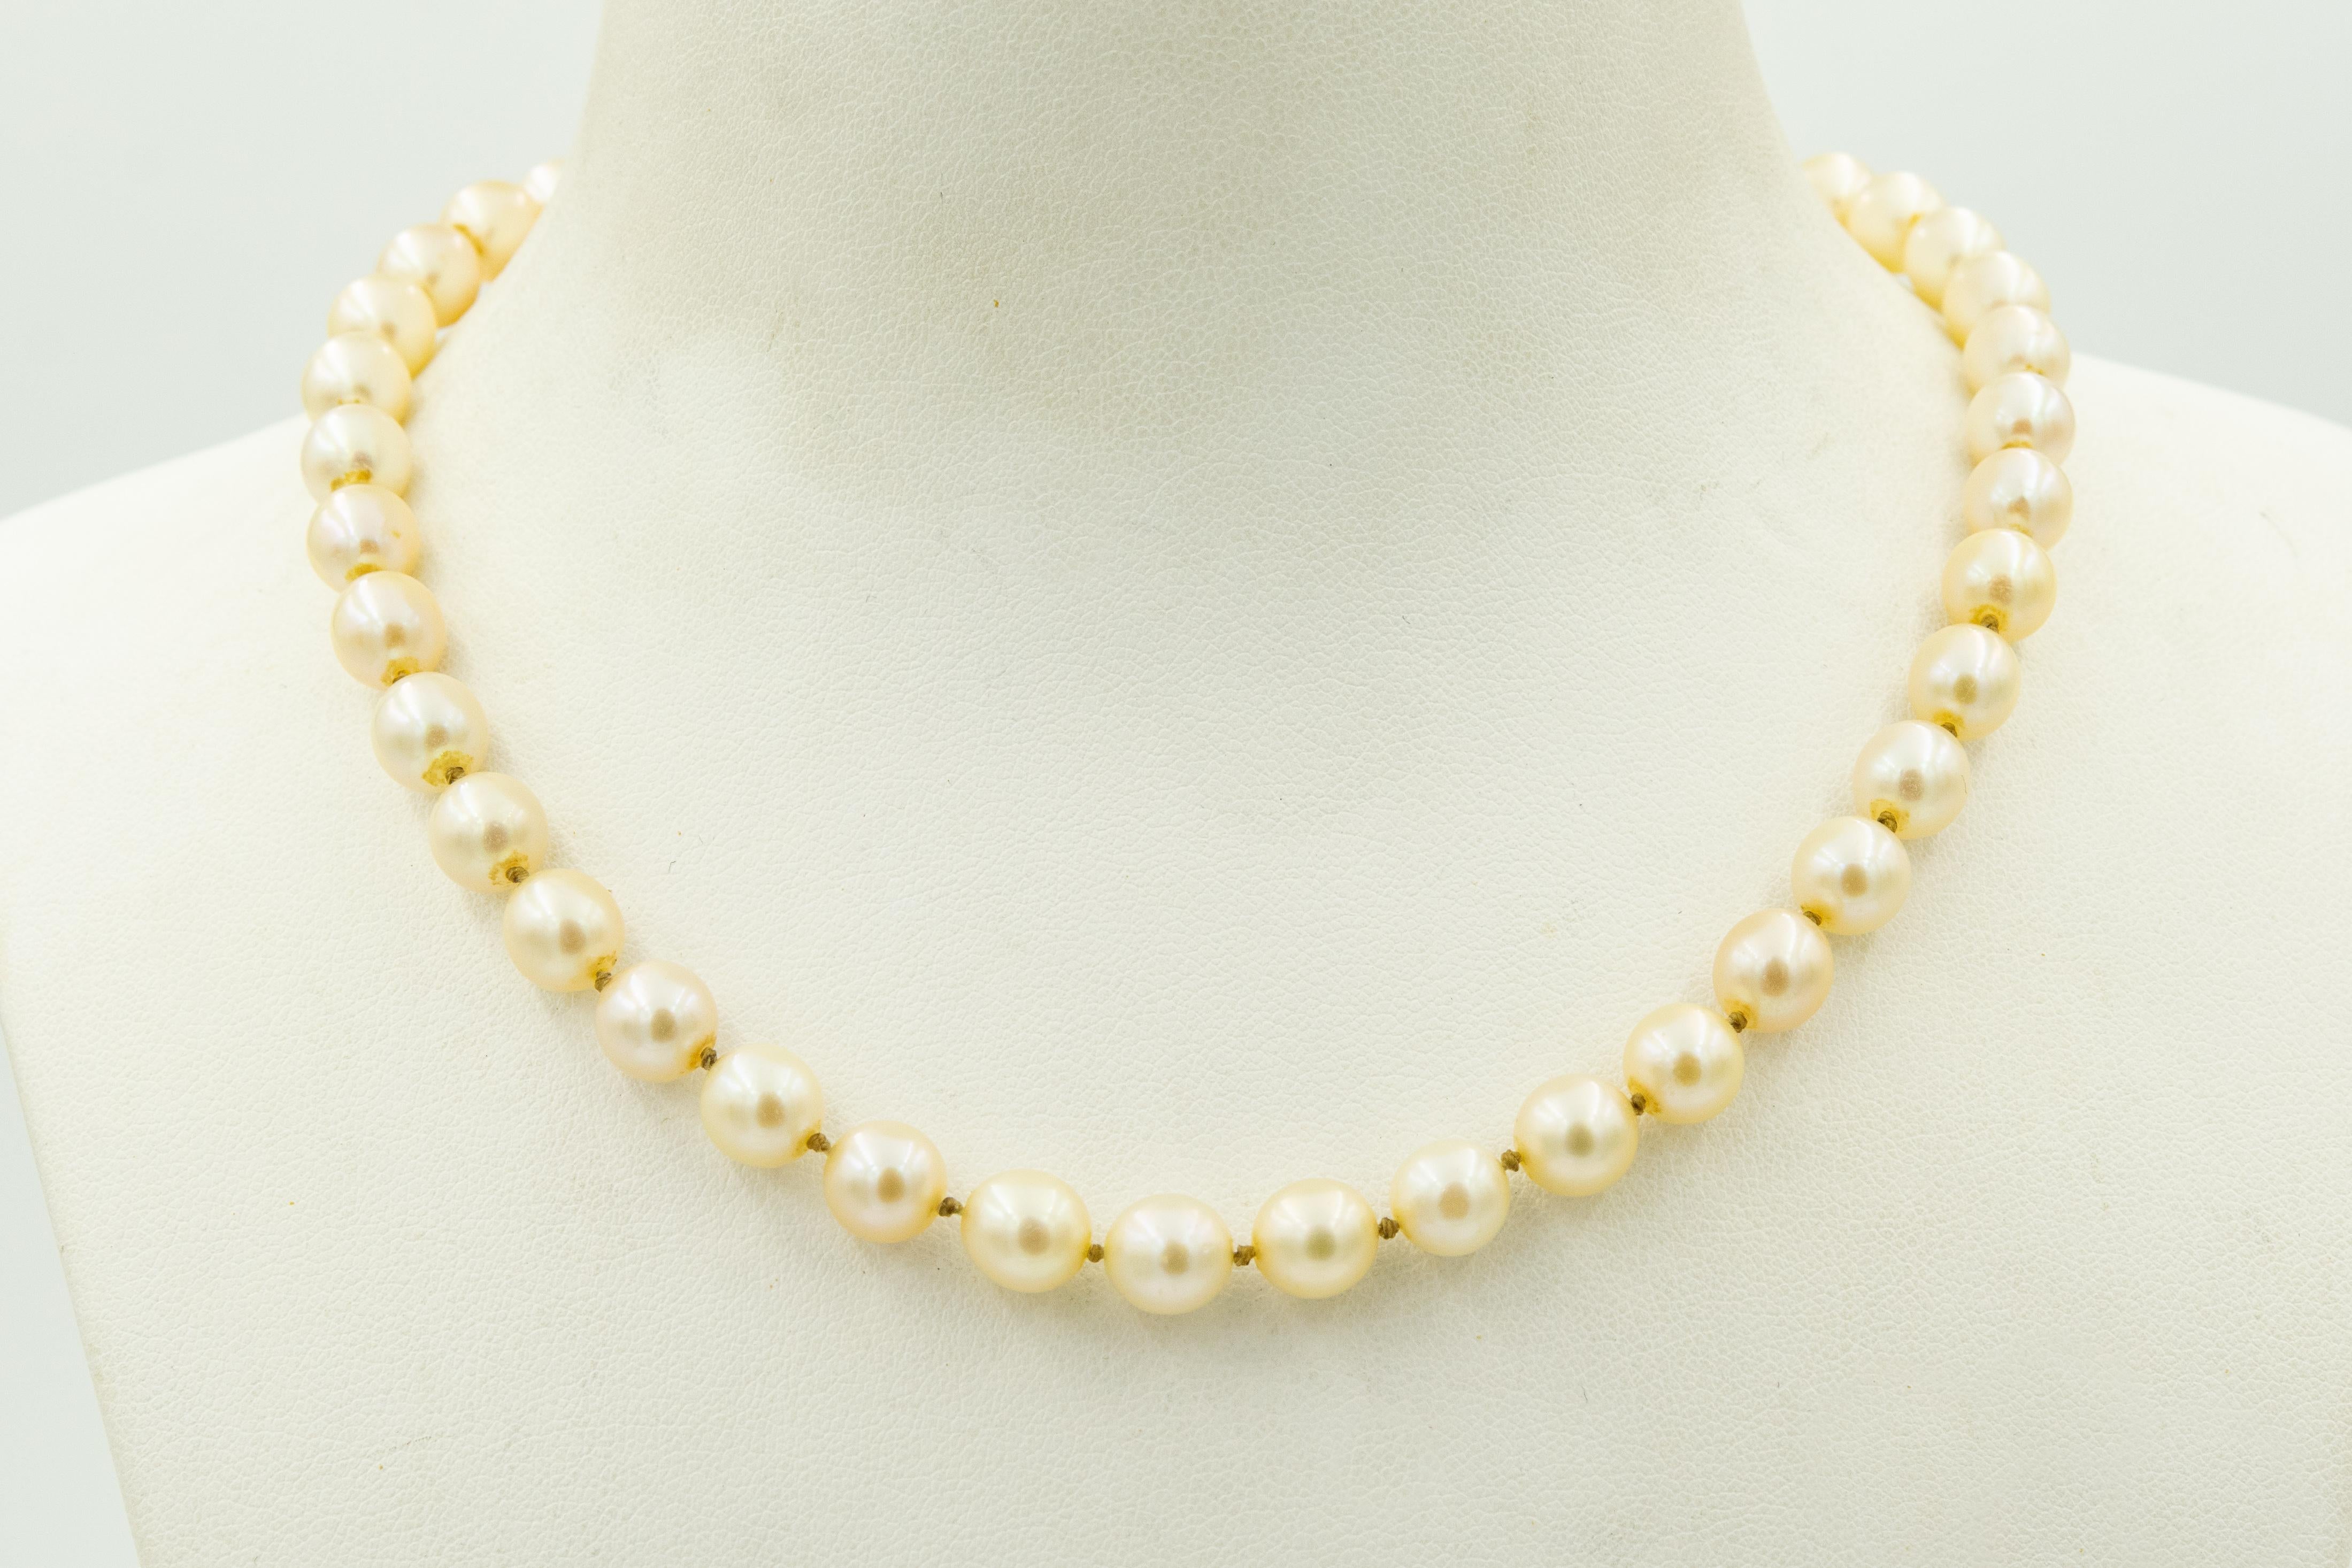 Collier classique de perles de culture du milieu du siècle, composé d'un rang de perles de 7,3 mm (quelques variations approximatives).  Le fil est noué entre chaque perle.  Le fermoir est constitué d'une grappe de perles qui s'élève un peu comme un